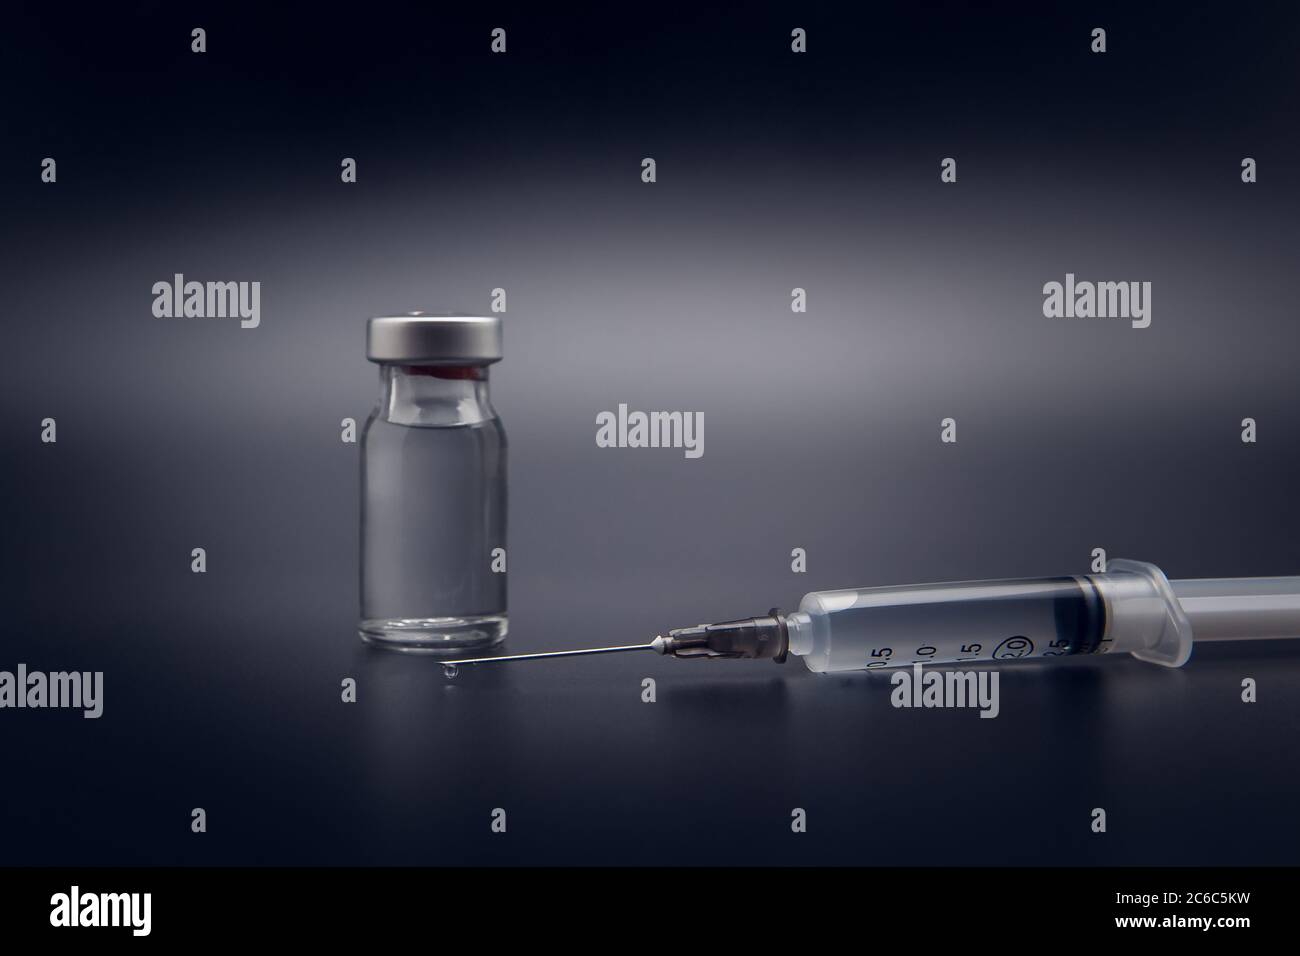 Flacone di vaccino piccolo (flaconcino) e siringa medica con una goccia di vaccino sull'ago, isolato su fondo nero per la vaccinazione di preventio Foto Stock